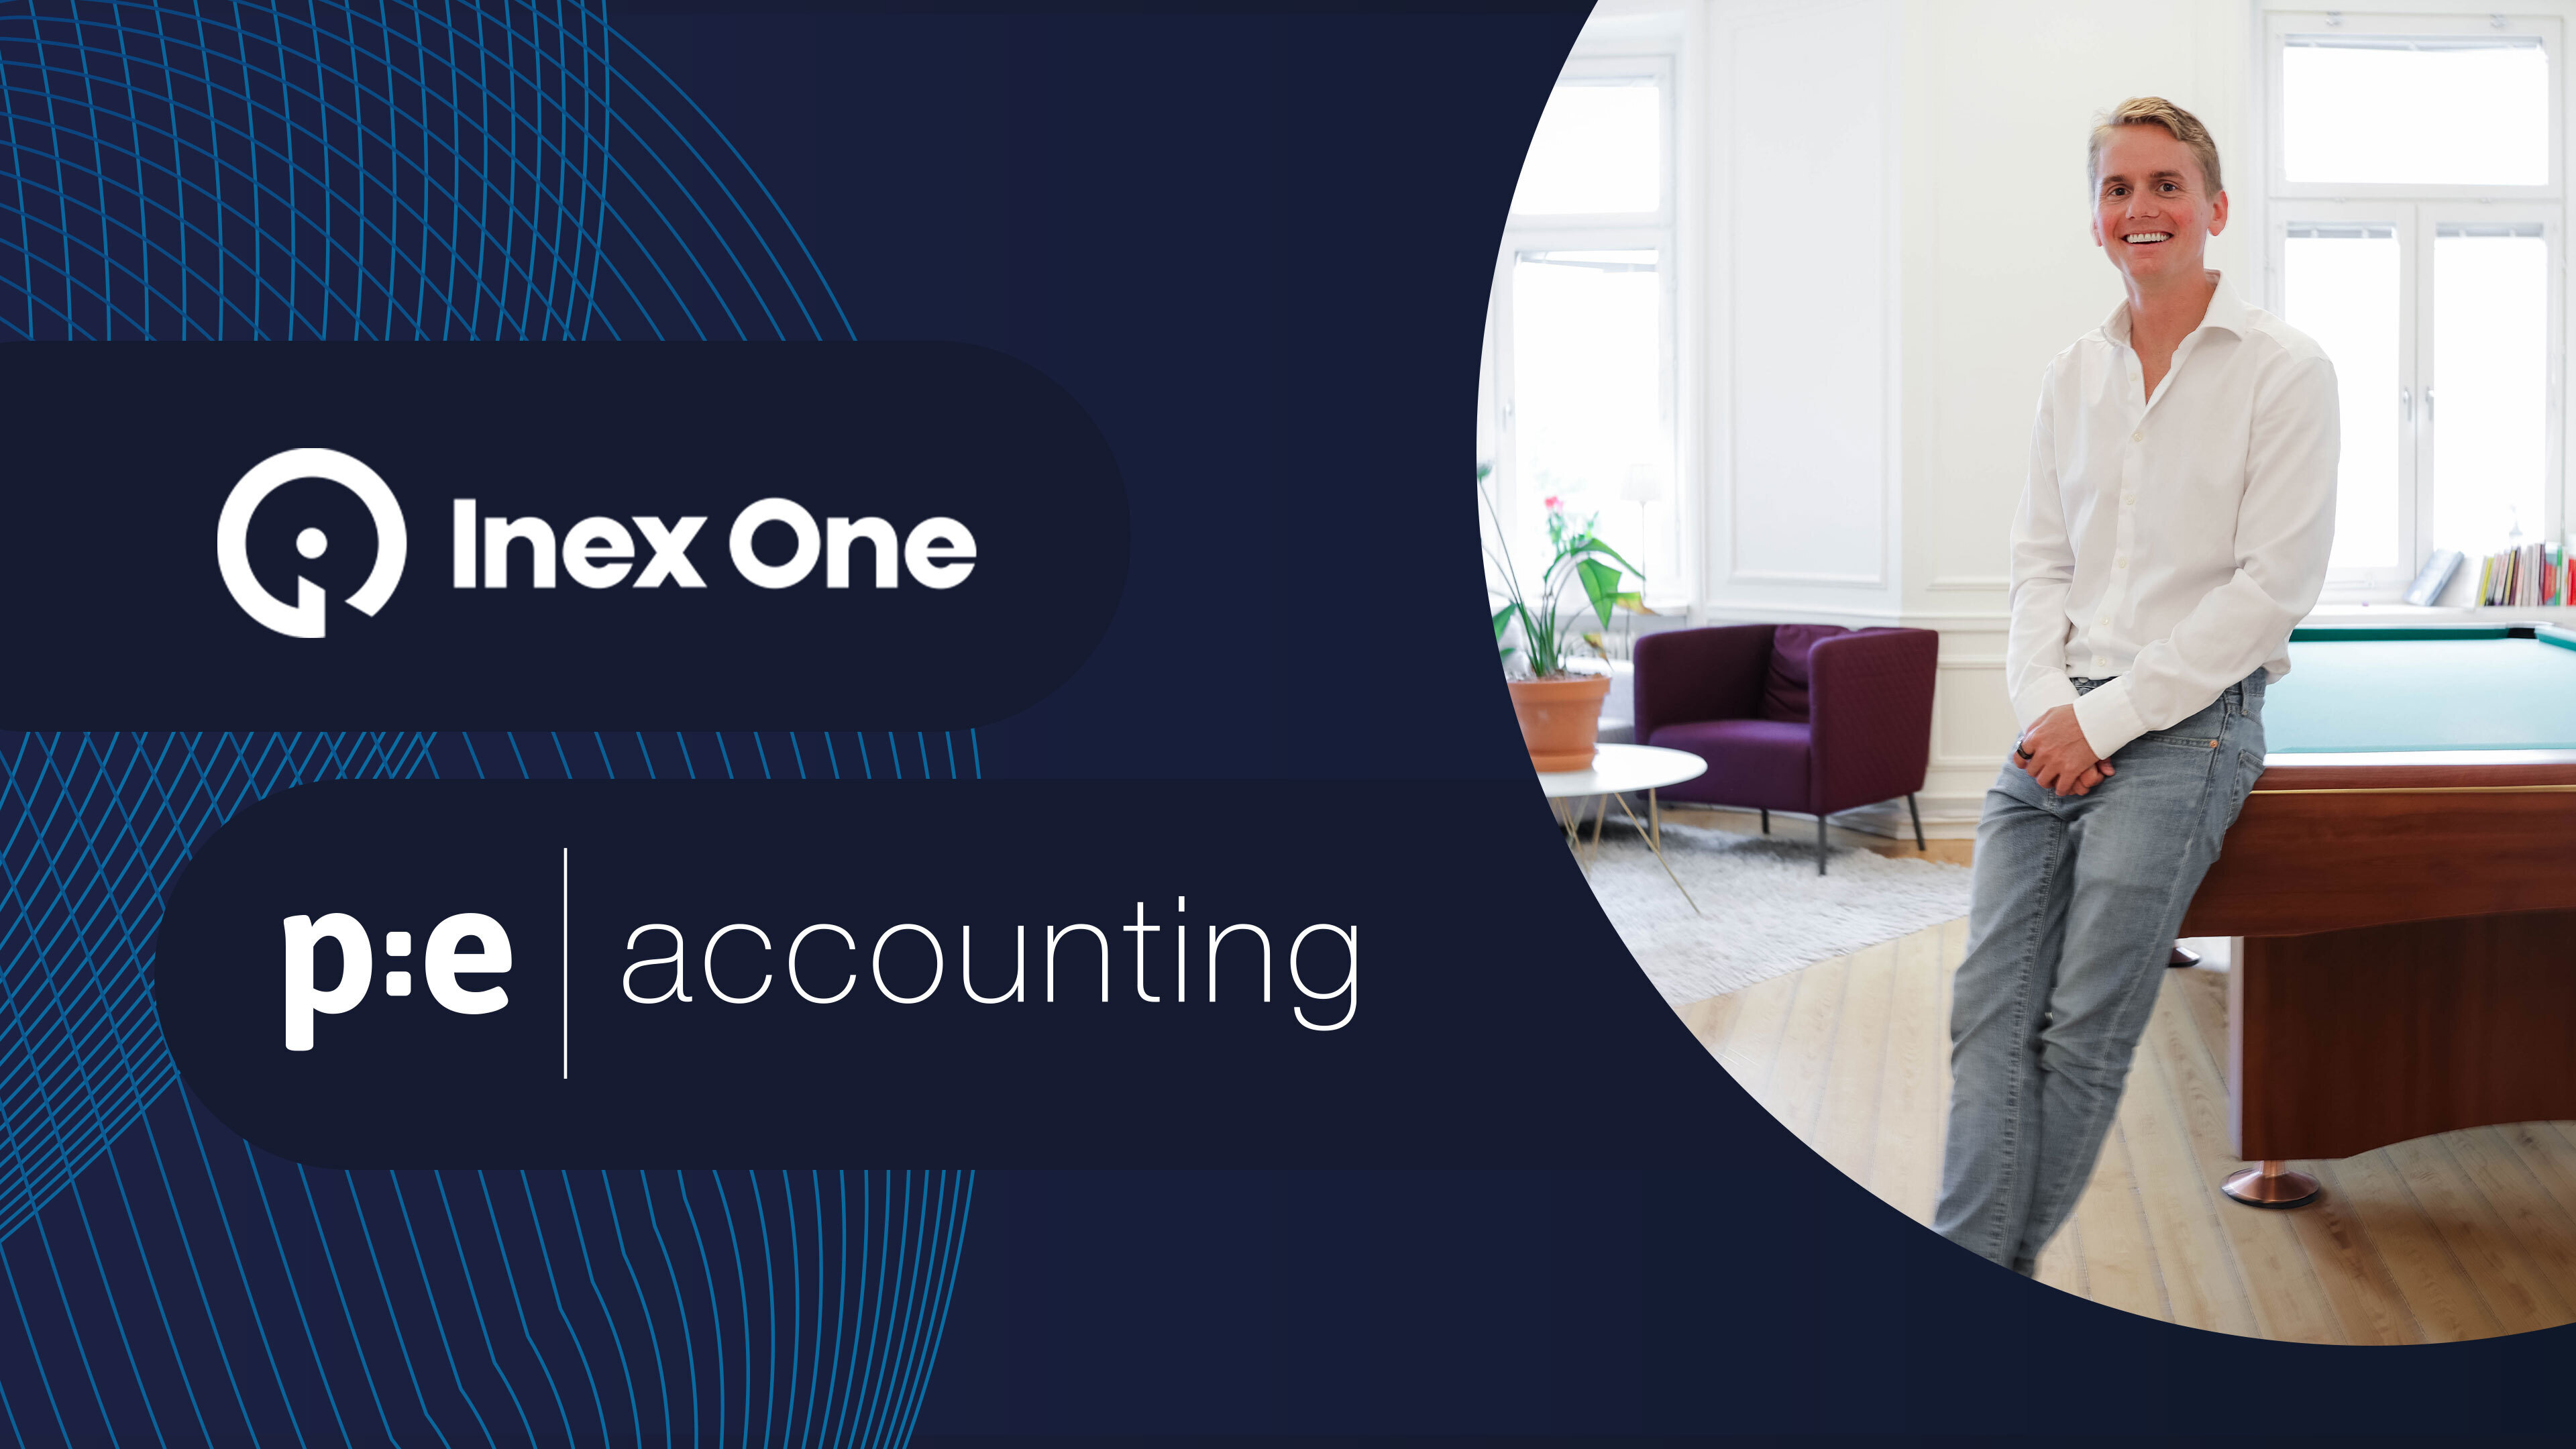 Inex One förlänger samarbetet med PE Accounting & förväntas öka omsättningen med 69 proce